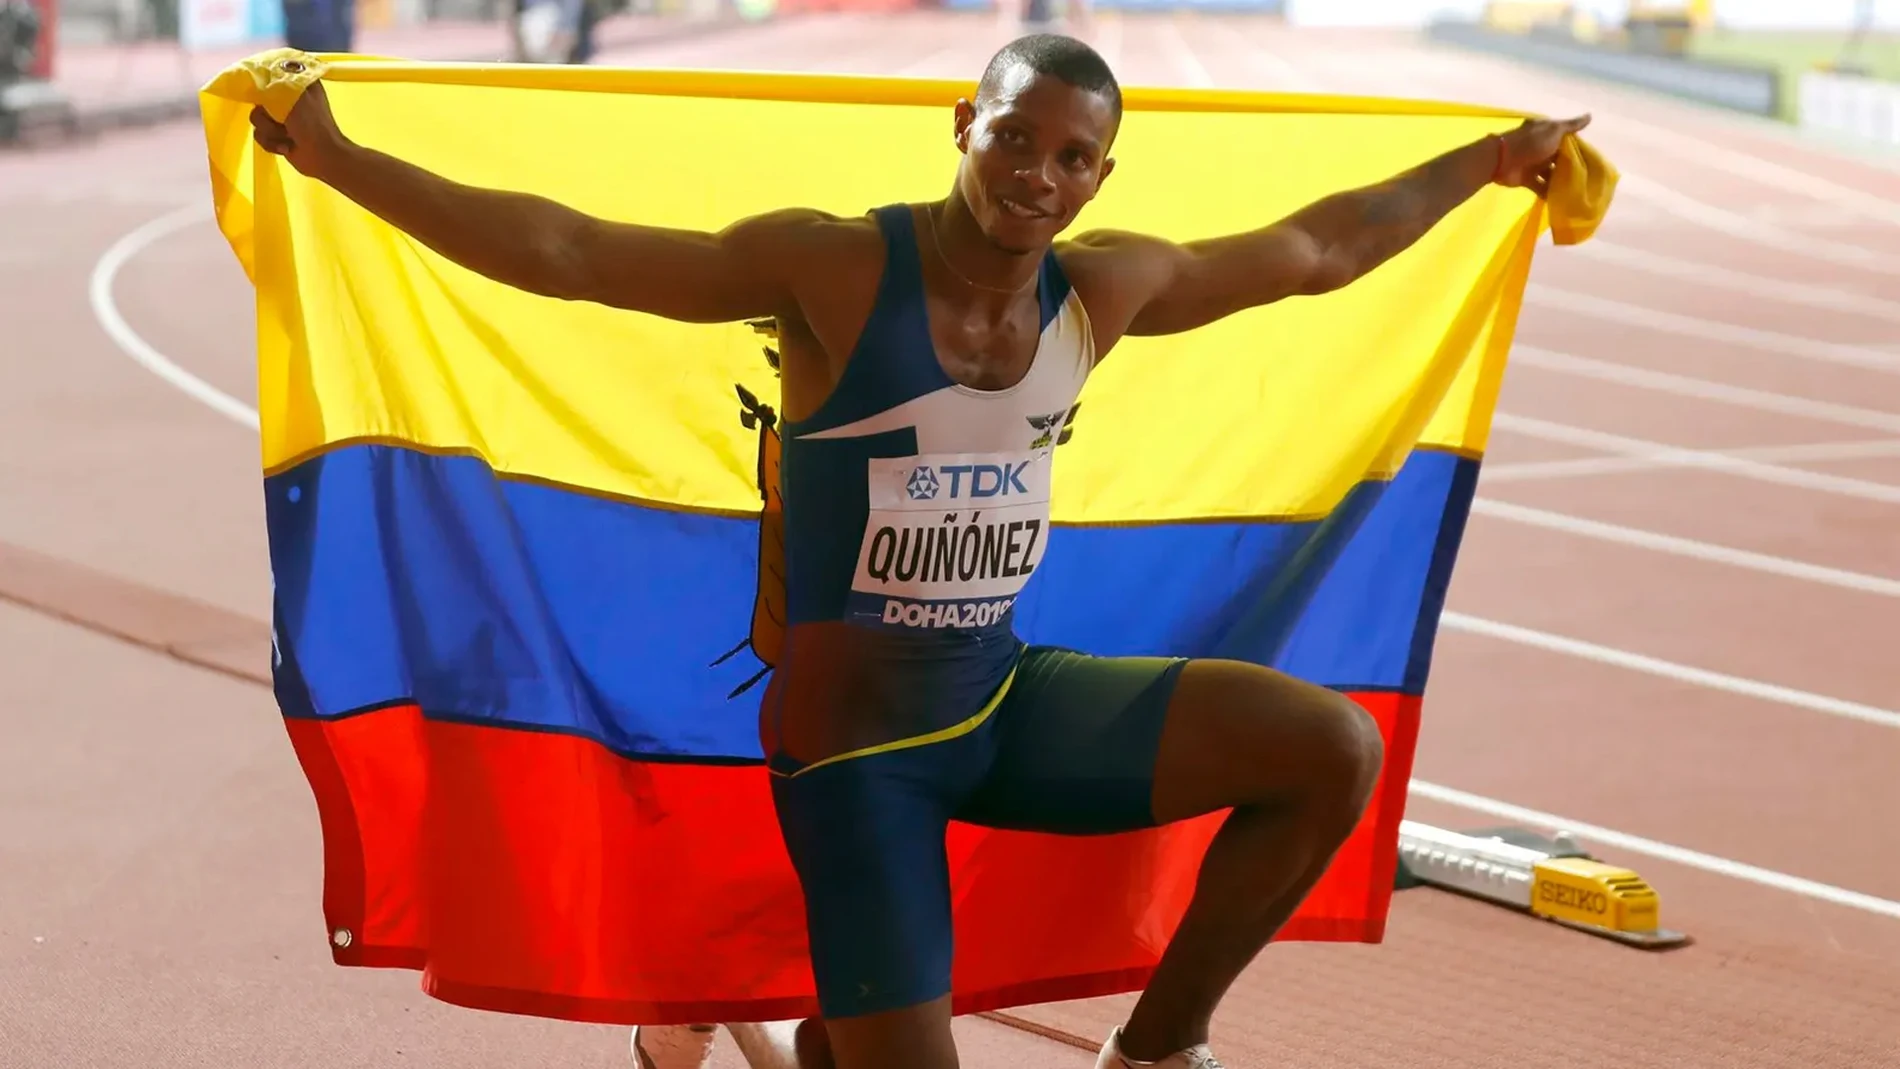 Deportes Antena 3 (23-10-21) Asesinan a tiros al velocista olímpico ecuatoriano Alex Quiñónez